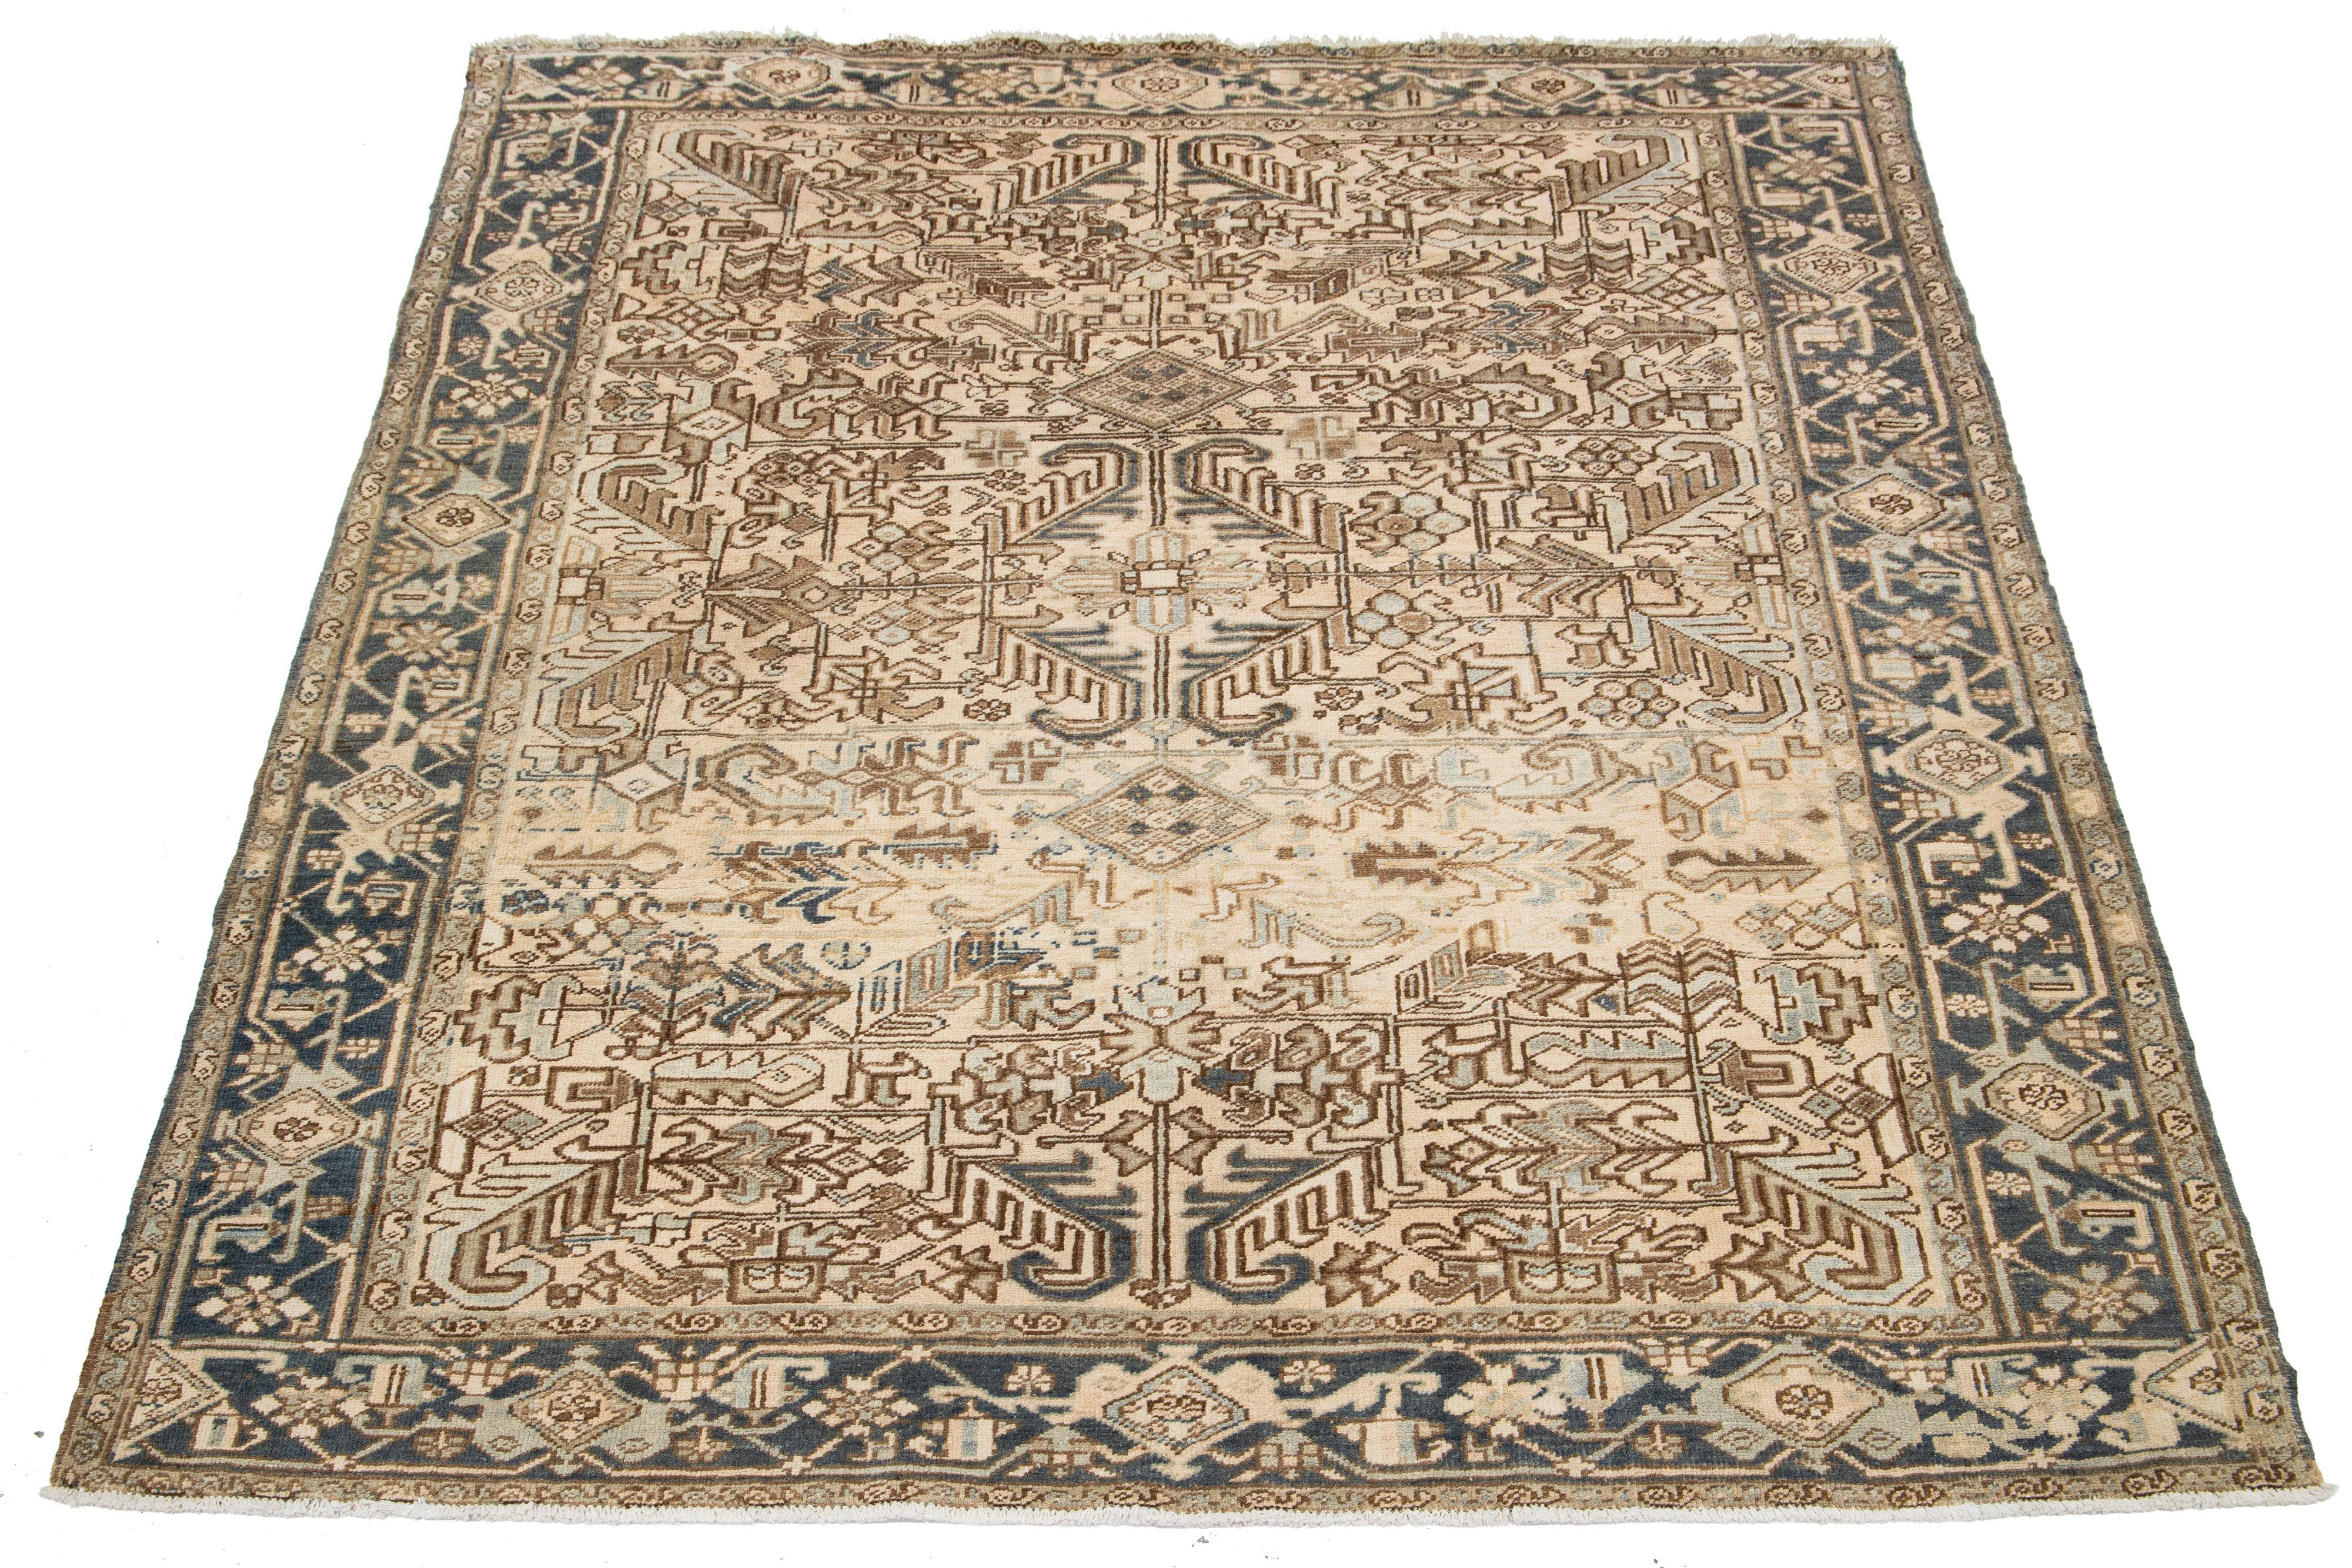 Ein antiker persischer Heriz-Teppich aus handgeknüpfter Wolle zeigt ein blaues und braunes Allover-Muster auf einem beigen Feld.

Dieser Teppich misst 7'6' x 9'2